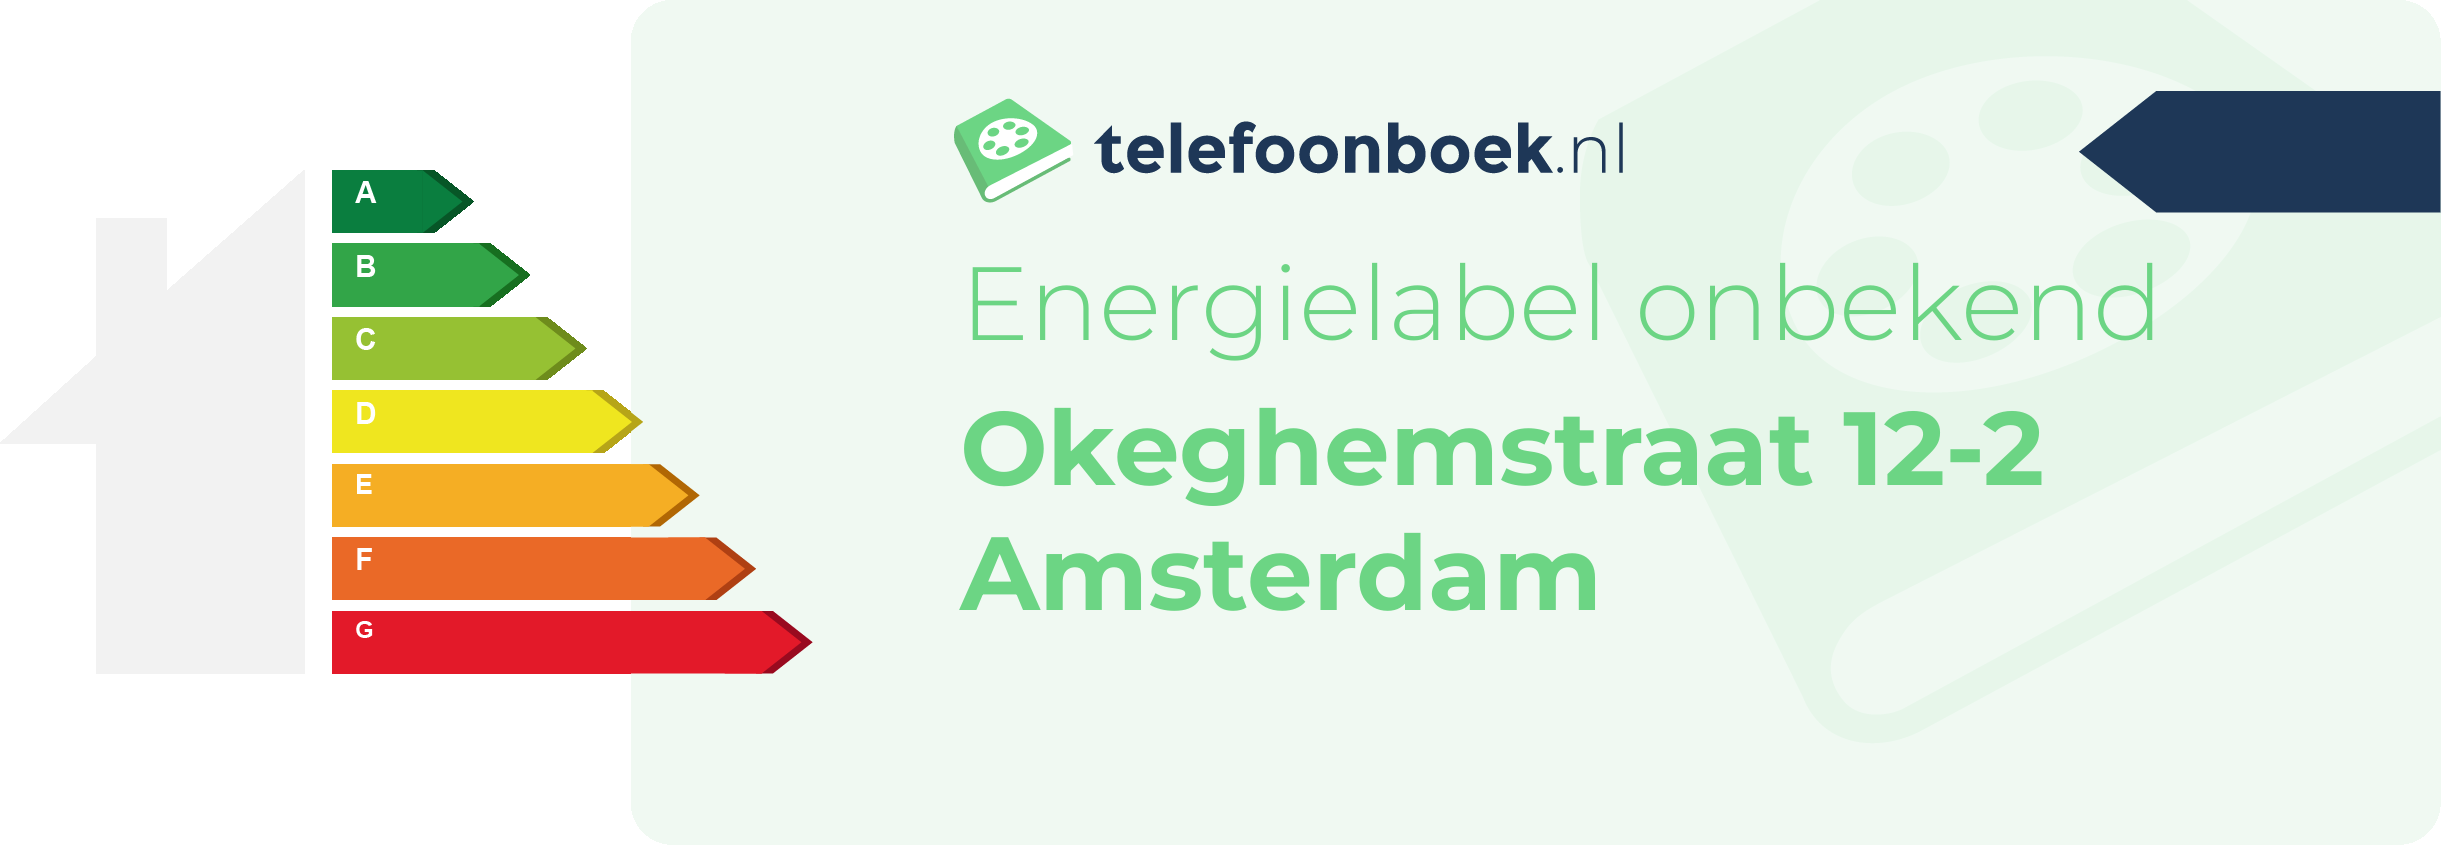 Energielabel Okeghemstraat 12-2 Amsterdam